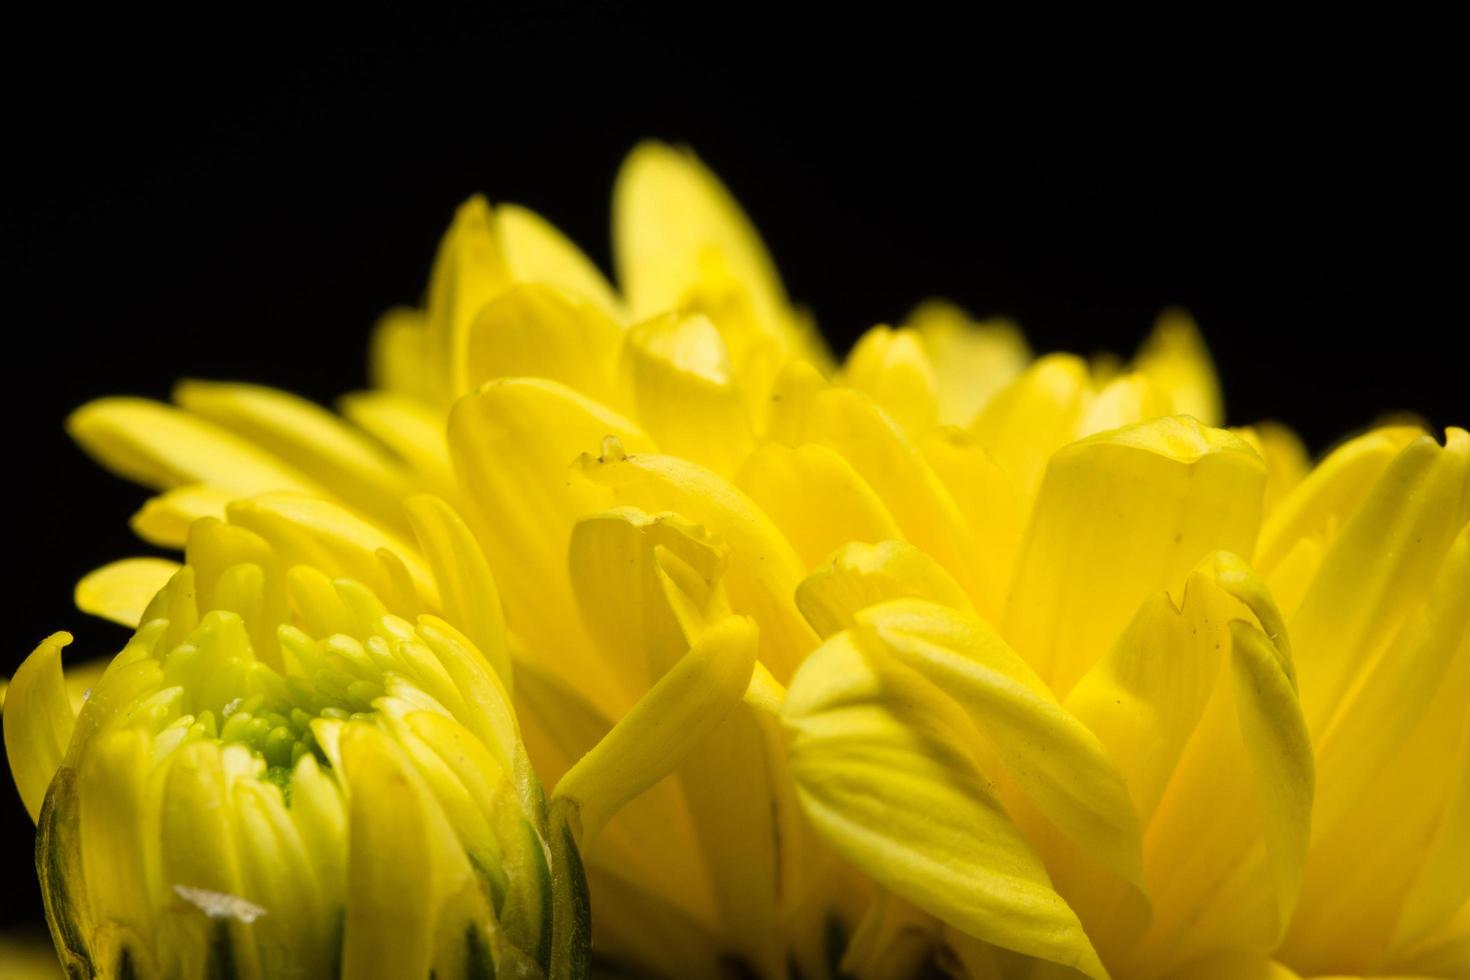 Yellow chrysanthemum flower photo